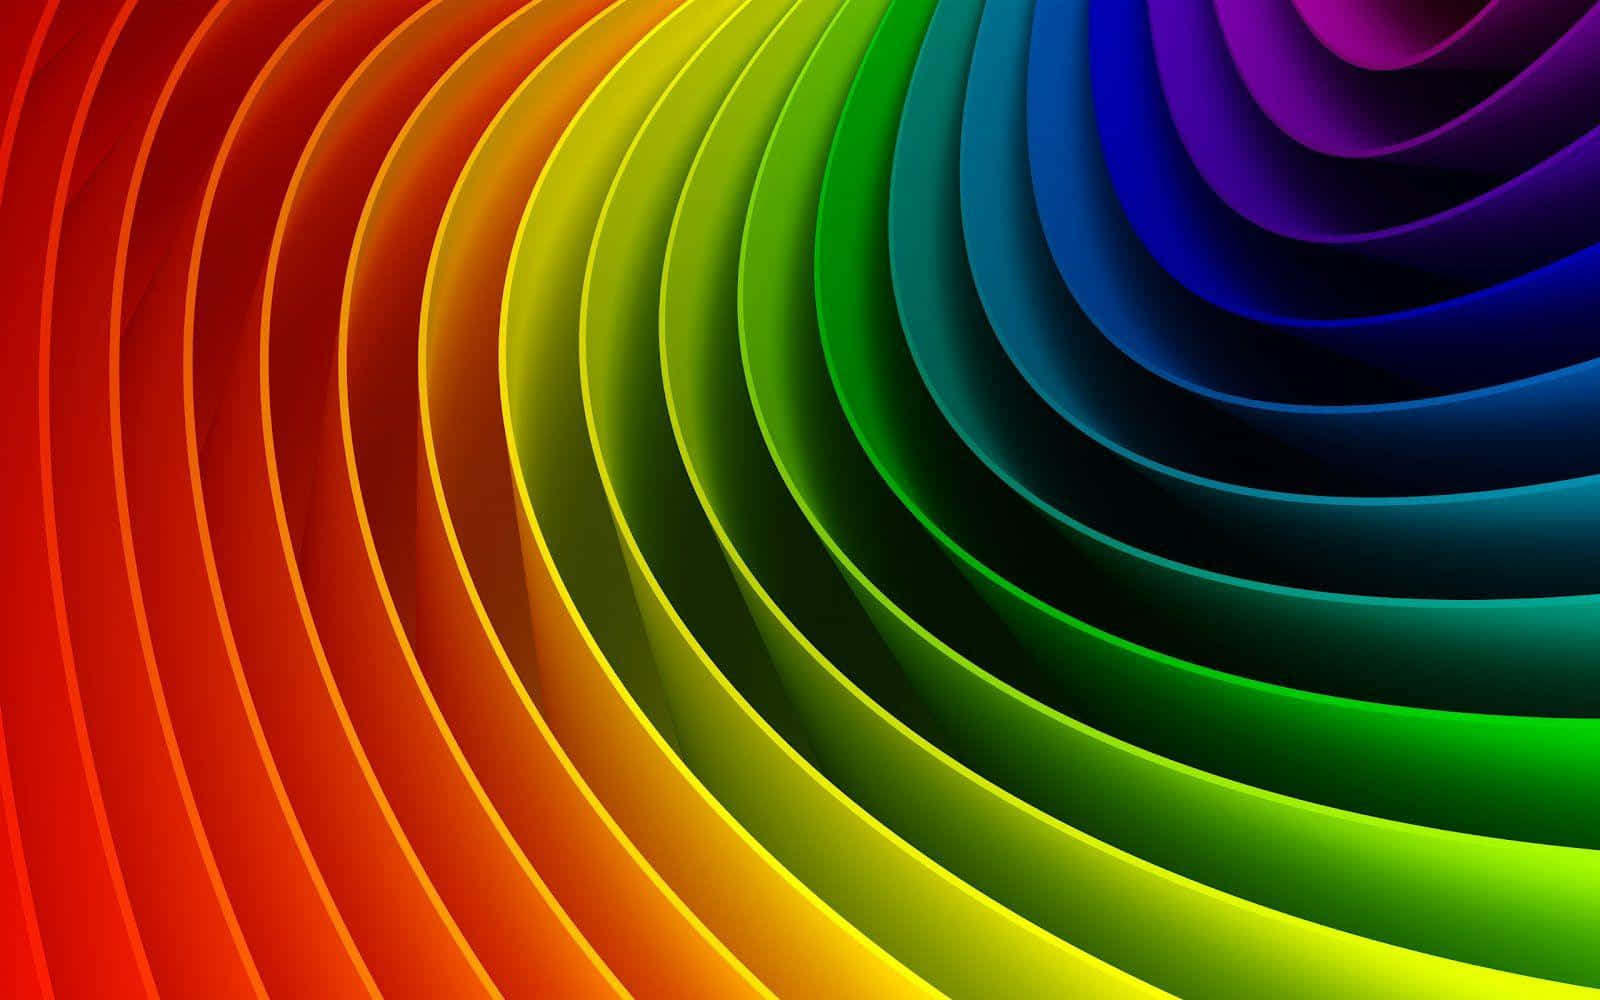 Enlivlig Multifarvet Baggrund I Et Mønster, Der Ligner En Hypnotisk Spiral.